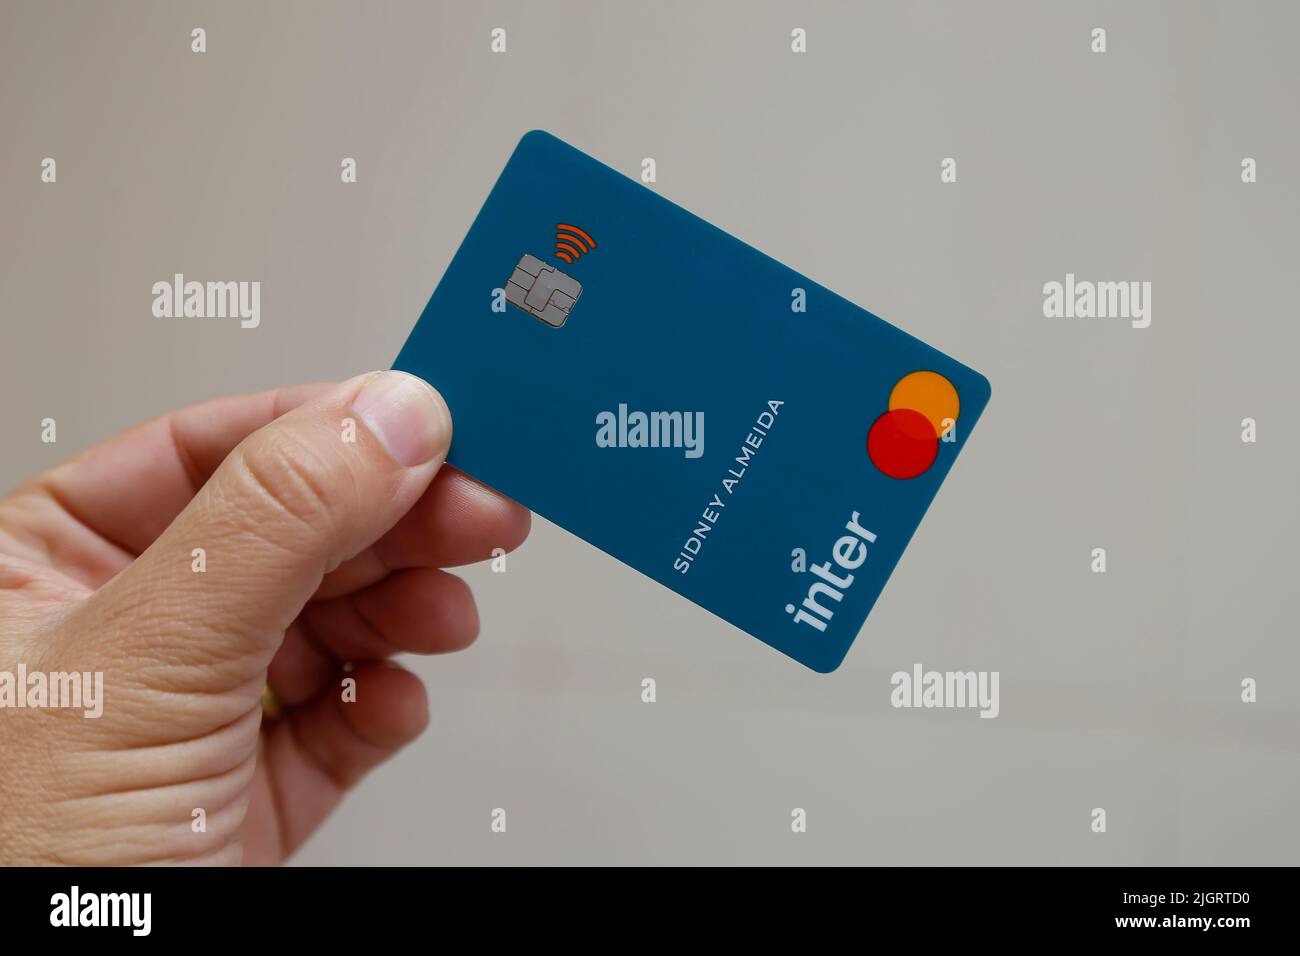 Minas Gerais, Brasil - 09 de julio de 2022: Tarjeta de crédito con logotipo inter-bancario y marca Mastercard Foto de stock